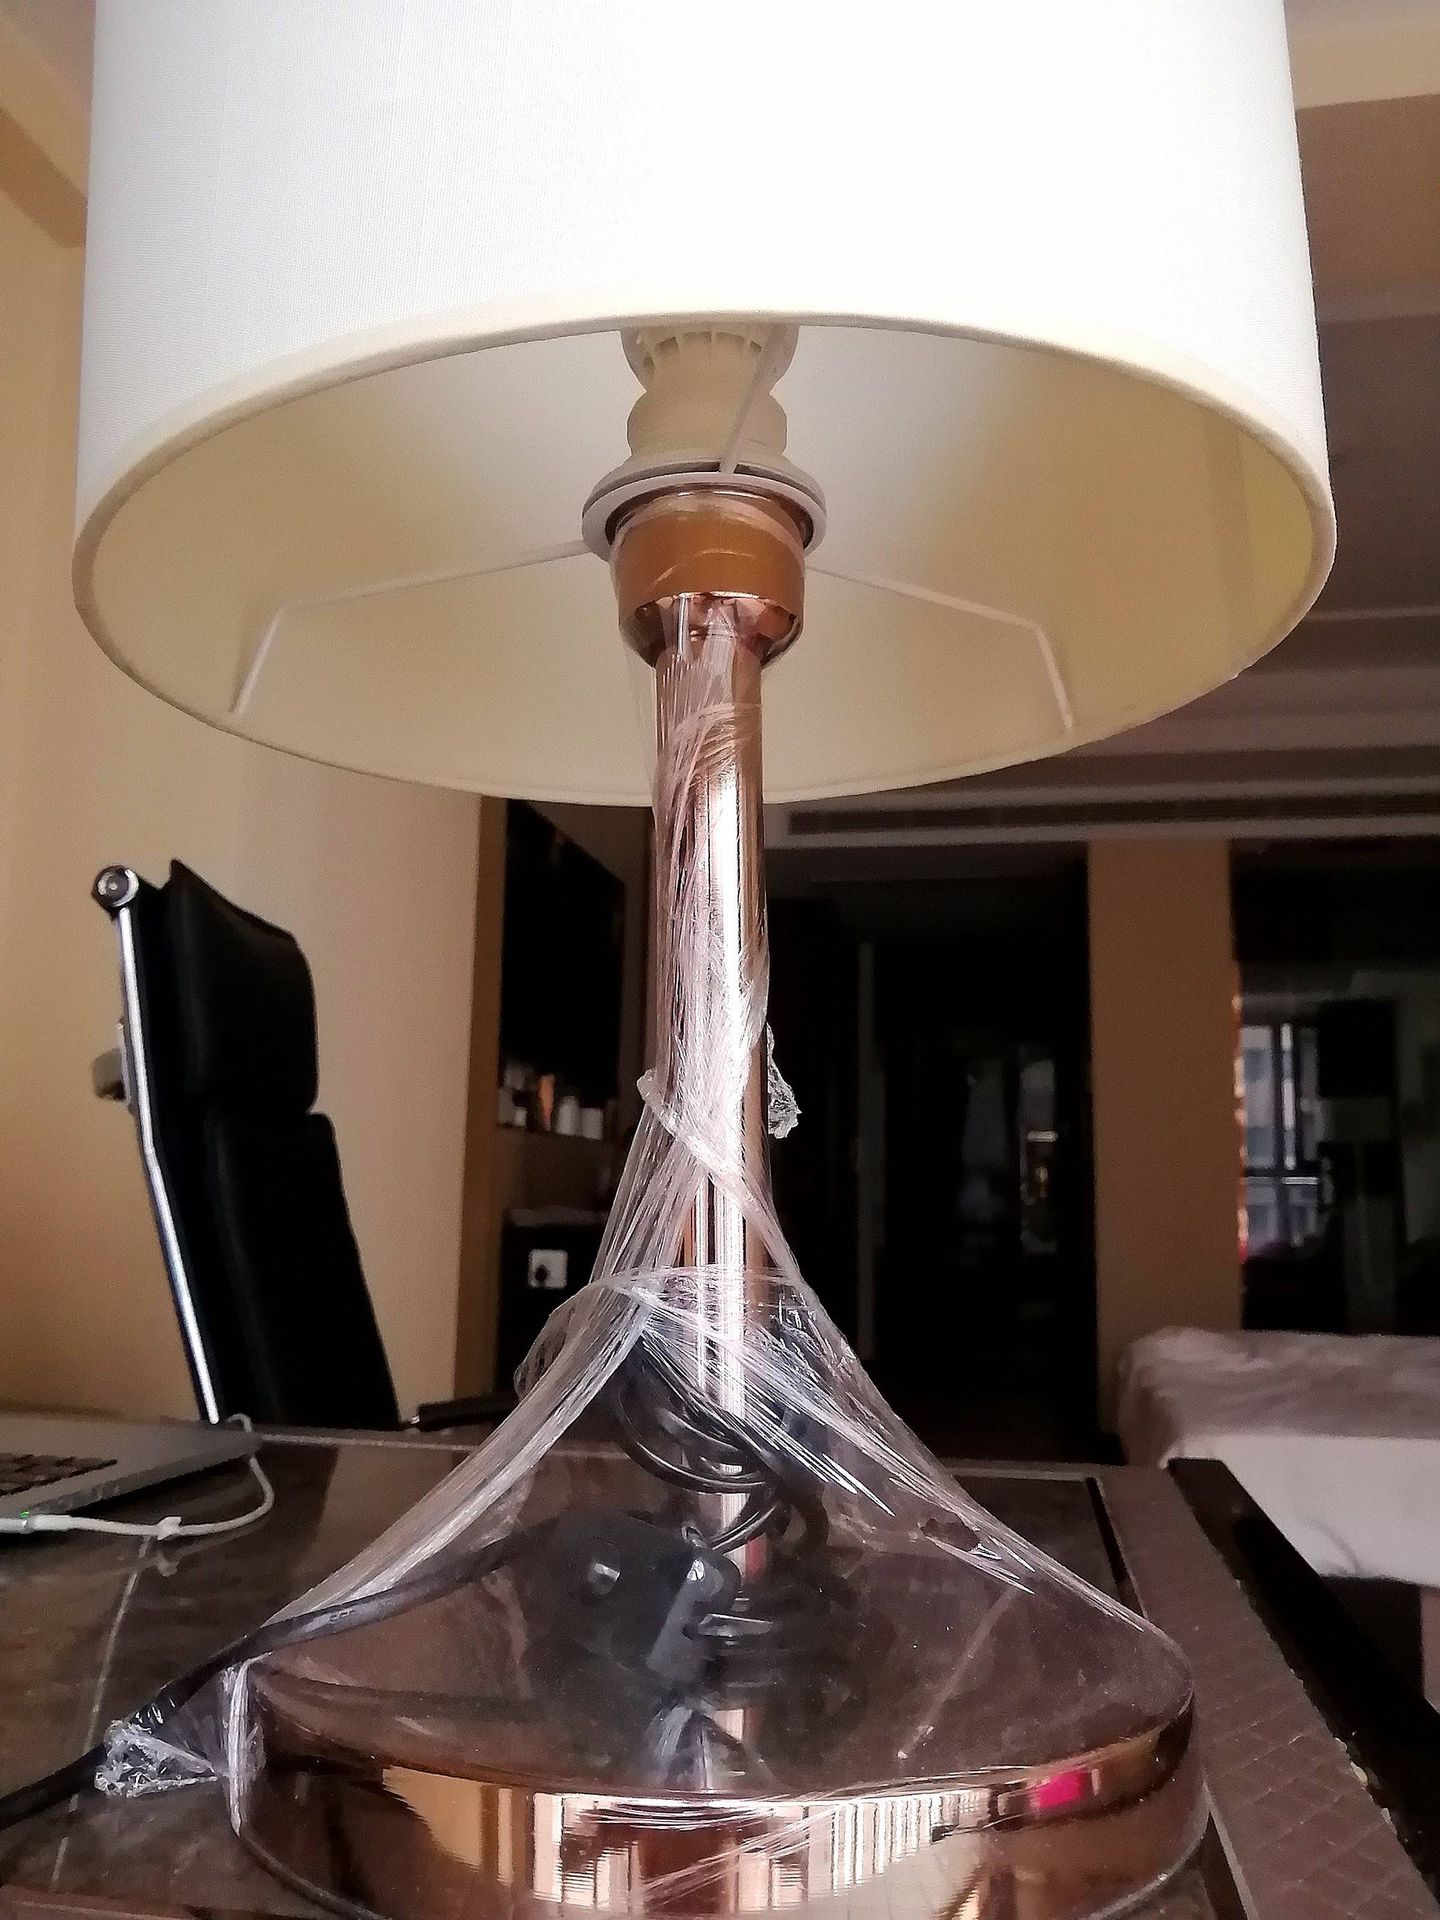 Precauciones en el hotel. La lámpara, cubierta de plástico. (S.A.)